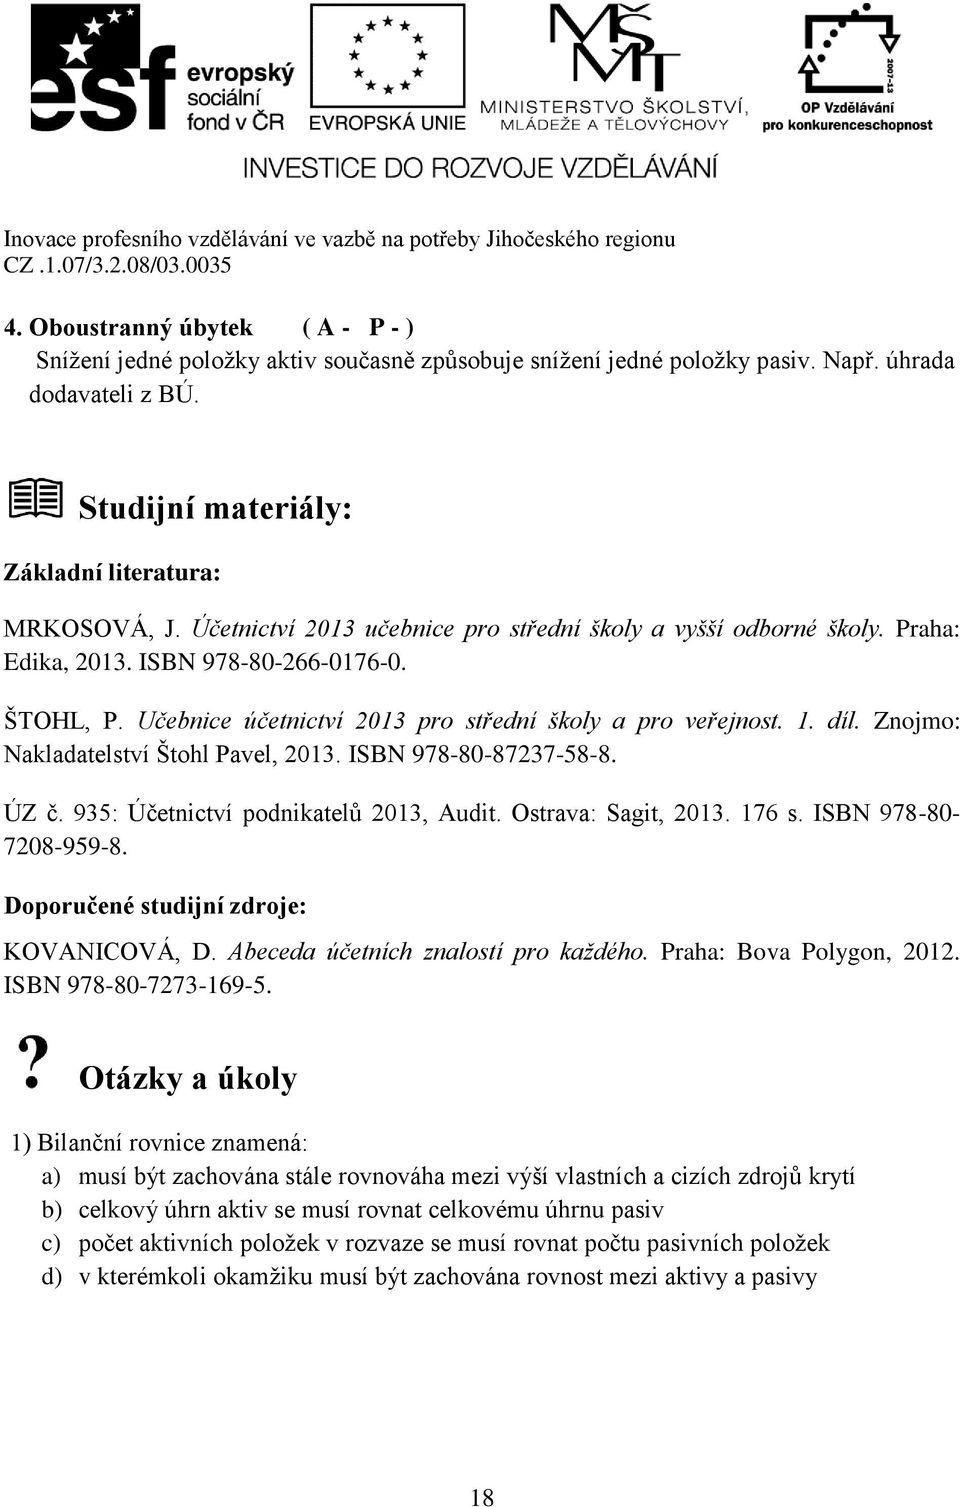 Znojmo: Nakladatelství Štohl Pavel, 2013. ISBN 978-80-87237-58-8. ÚZ č. 935: Účetnictví podnikatelů 2013, Audit. Ostrava: Sagit, 2013. 176 s. ISBN 978-80- 7208-959-8.